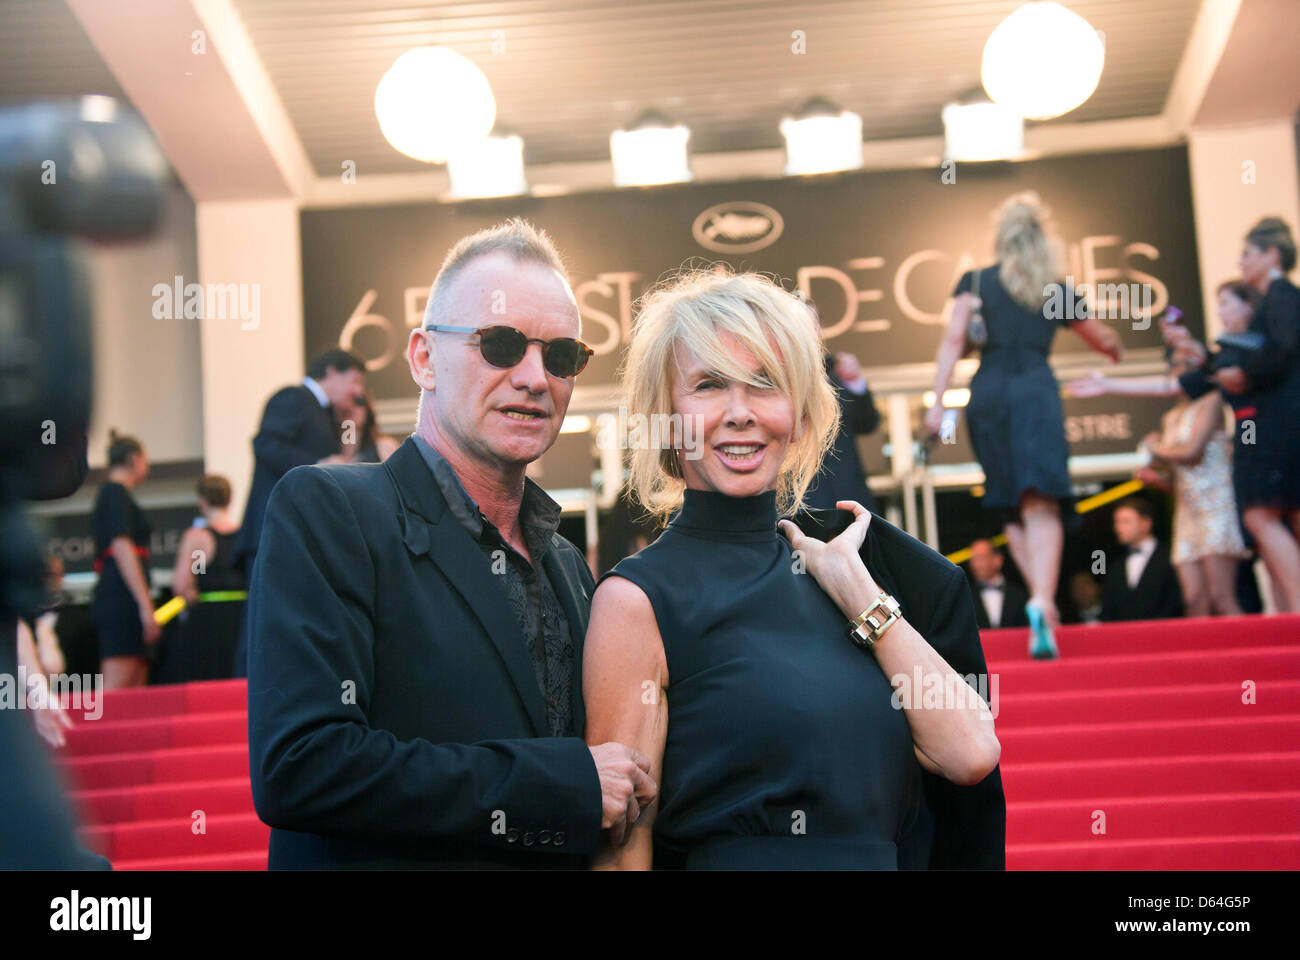 Il cantante Sting e sua moglie Trudie Styler arrivare alla premiere di 'Mud" durante il sessantacinquesimo Cannes Film Festival presso il Palais des Festivals a Cannes, Francia, il 26 maggio 2012. Foto: Hubert Boesl Foto Stock